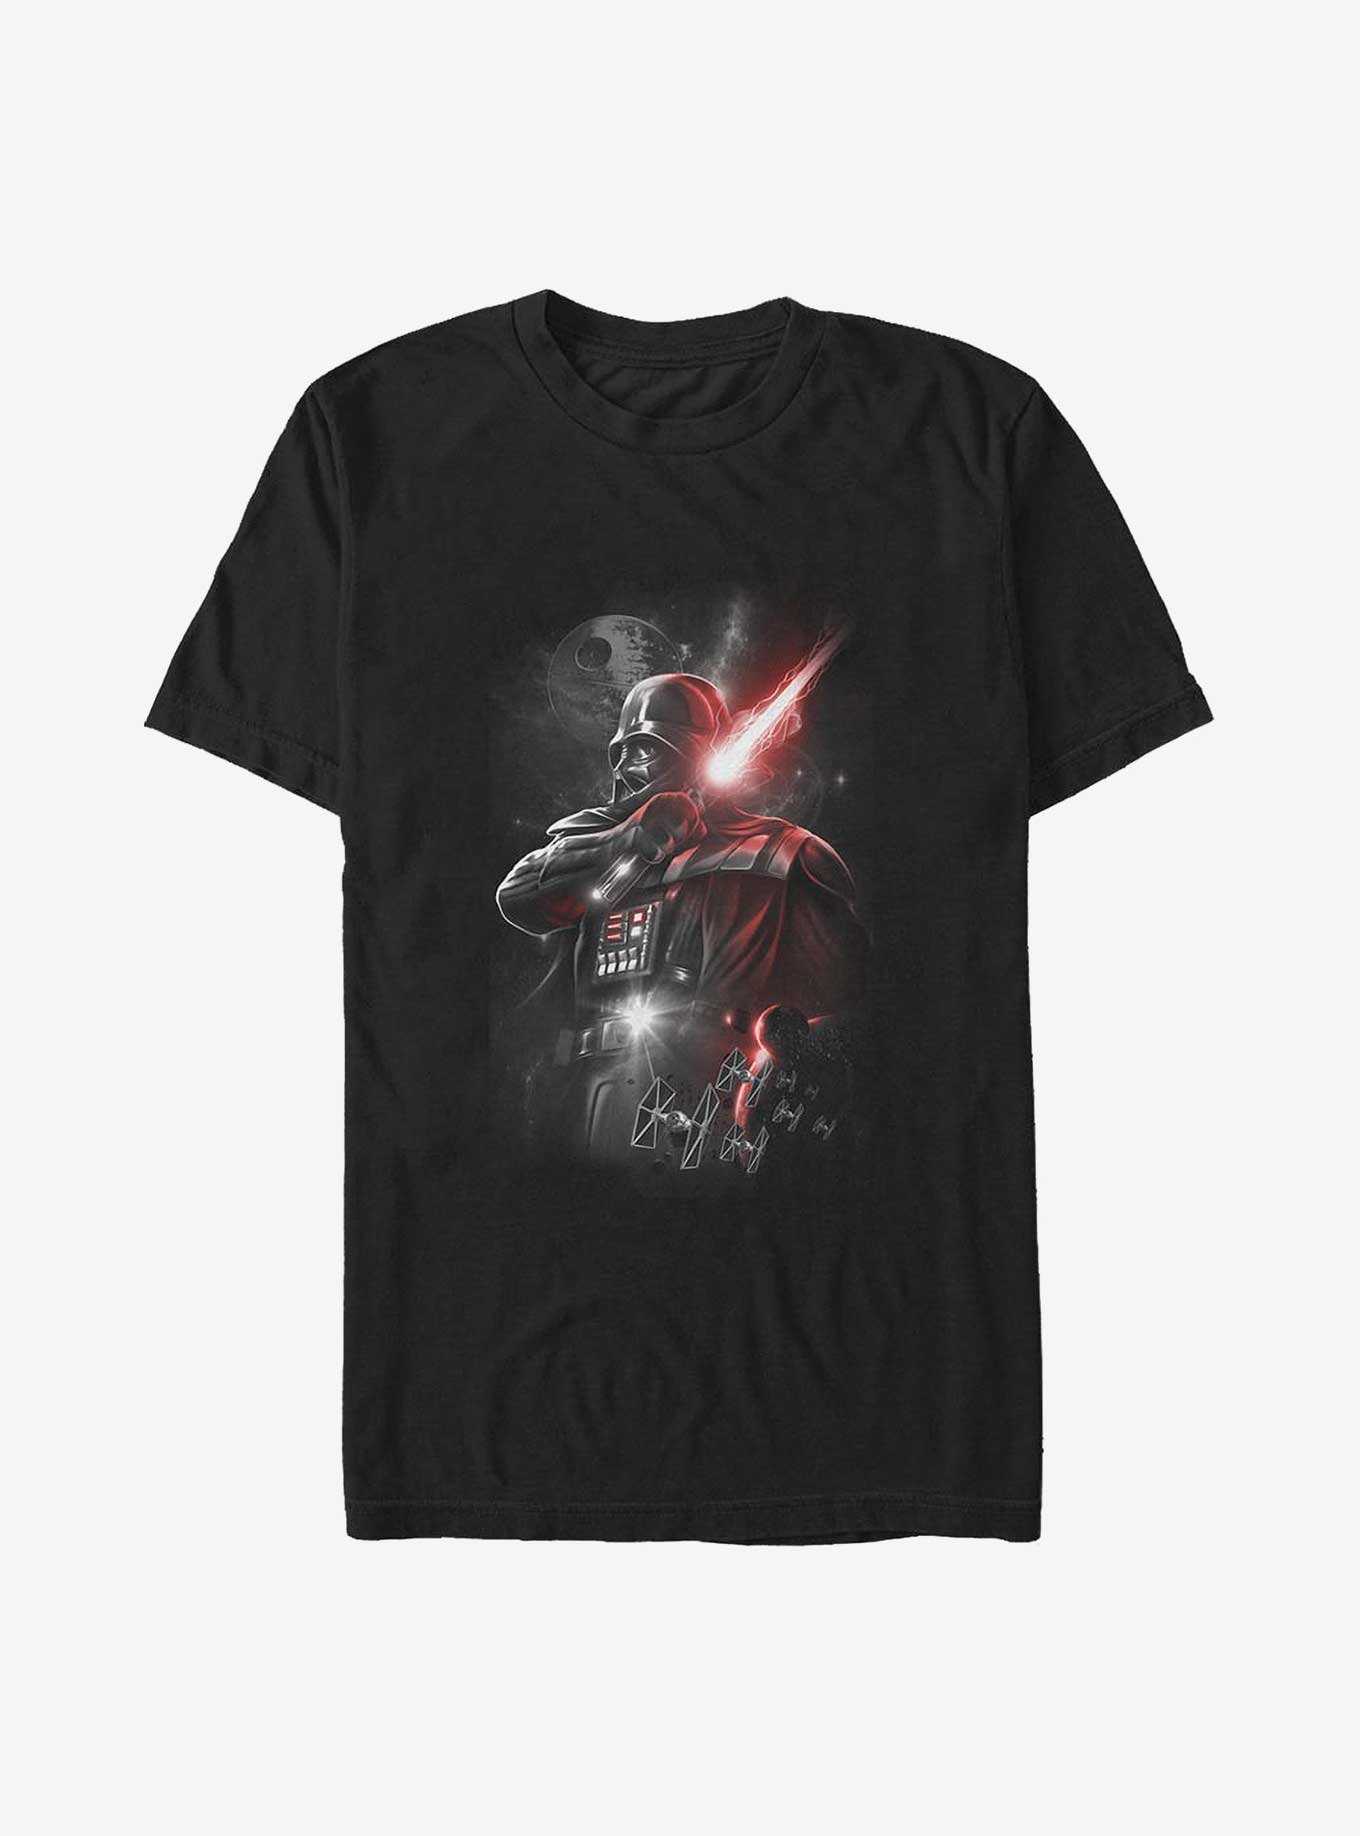 Star Wars Darth Vader Dark Lord Poster Big & Tall T-Shirt, , hi-res